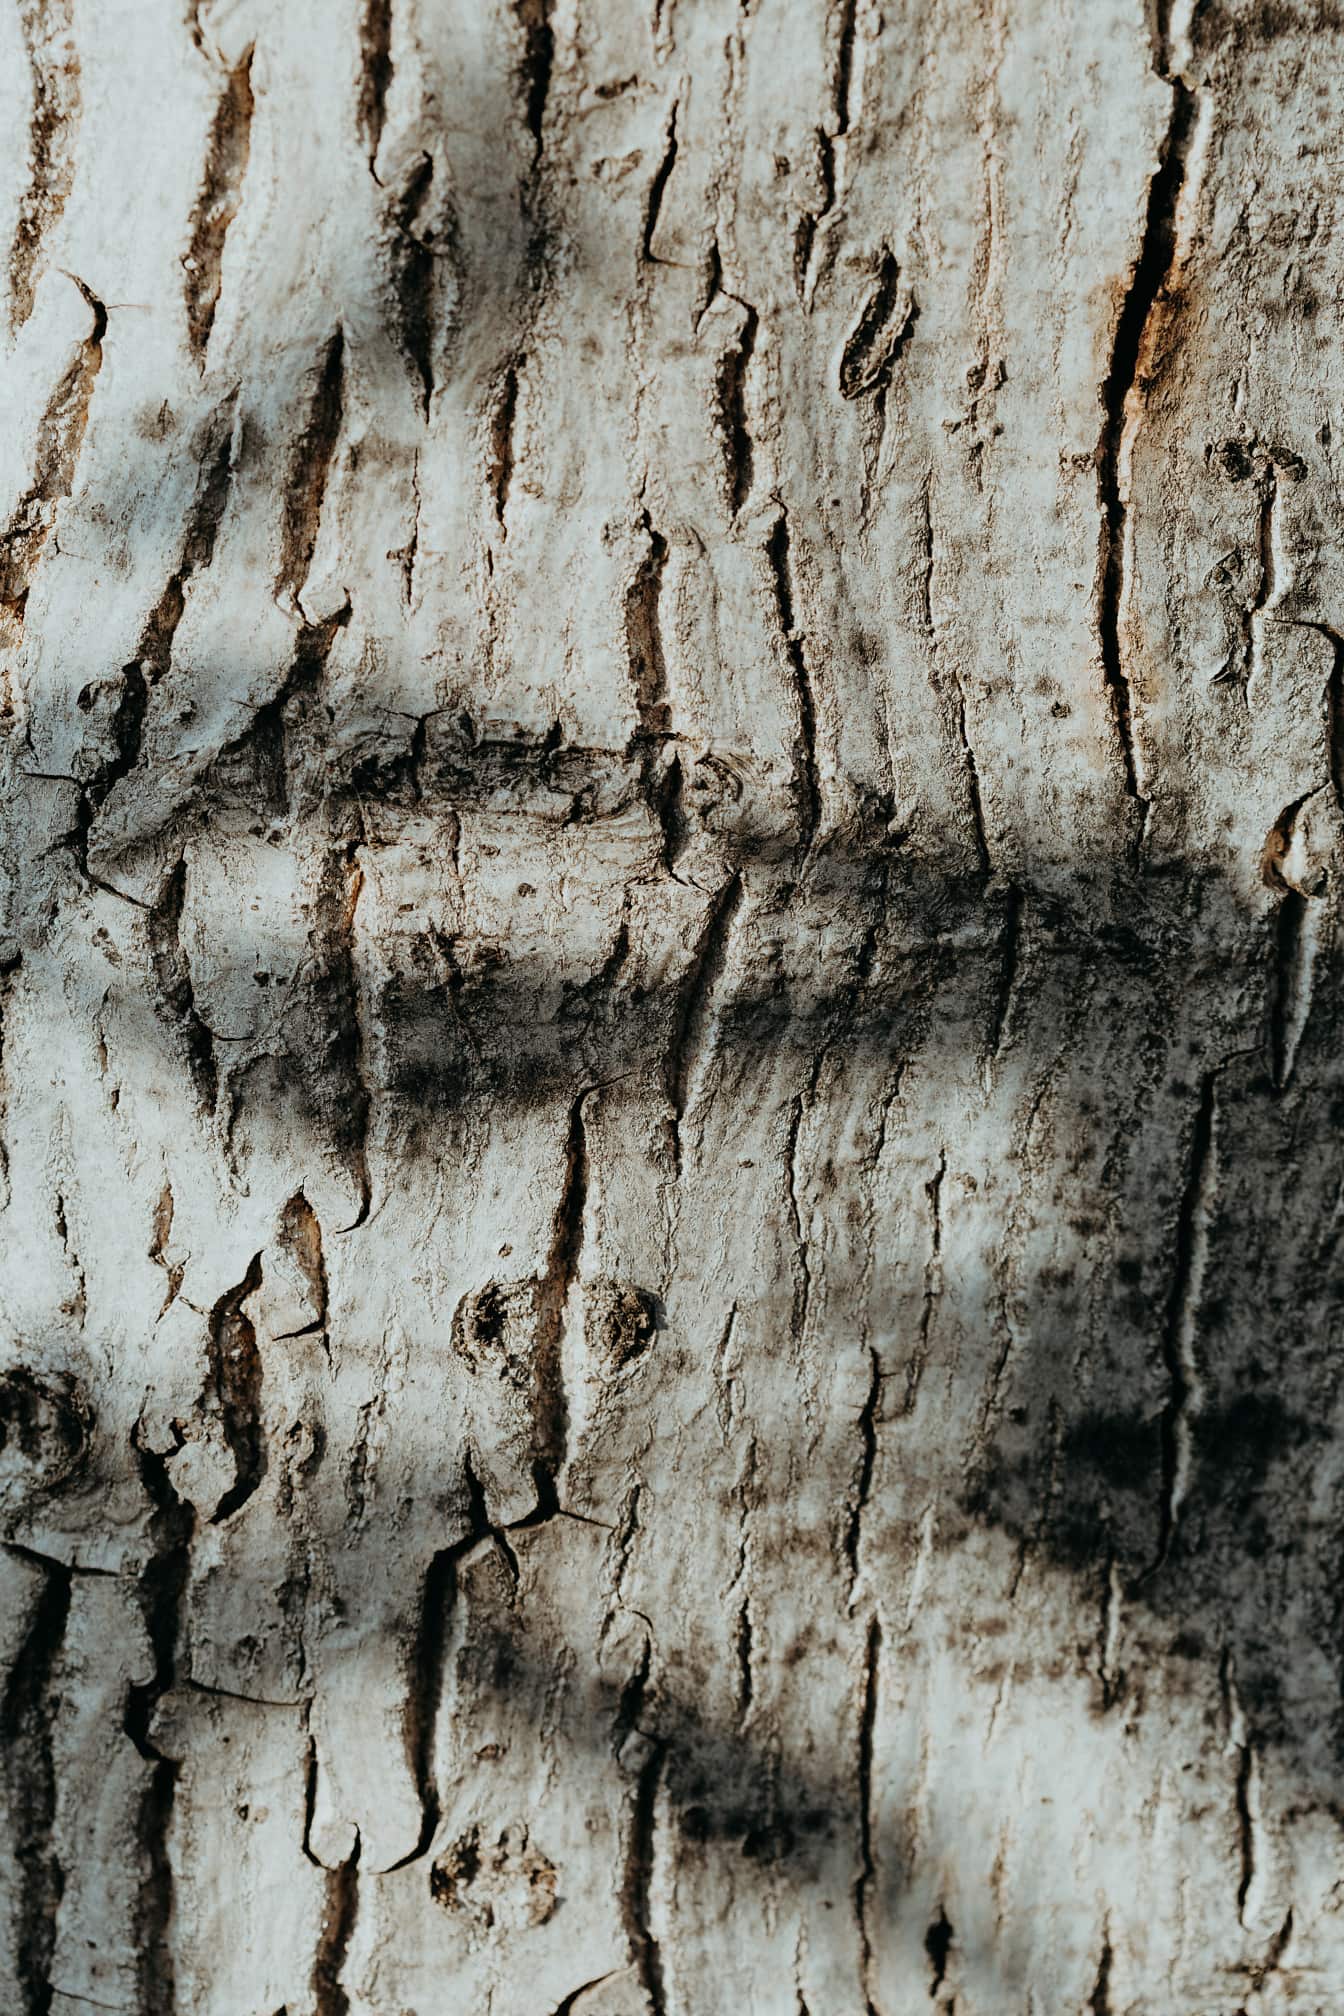 Gölge yakın çekim dokusuna sahip kavak ağacı gövdesi korteksi